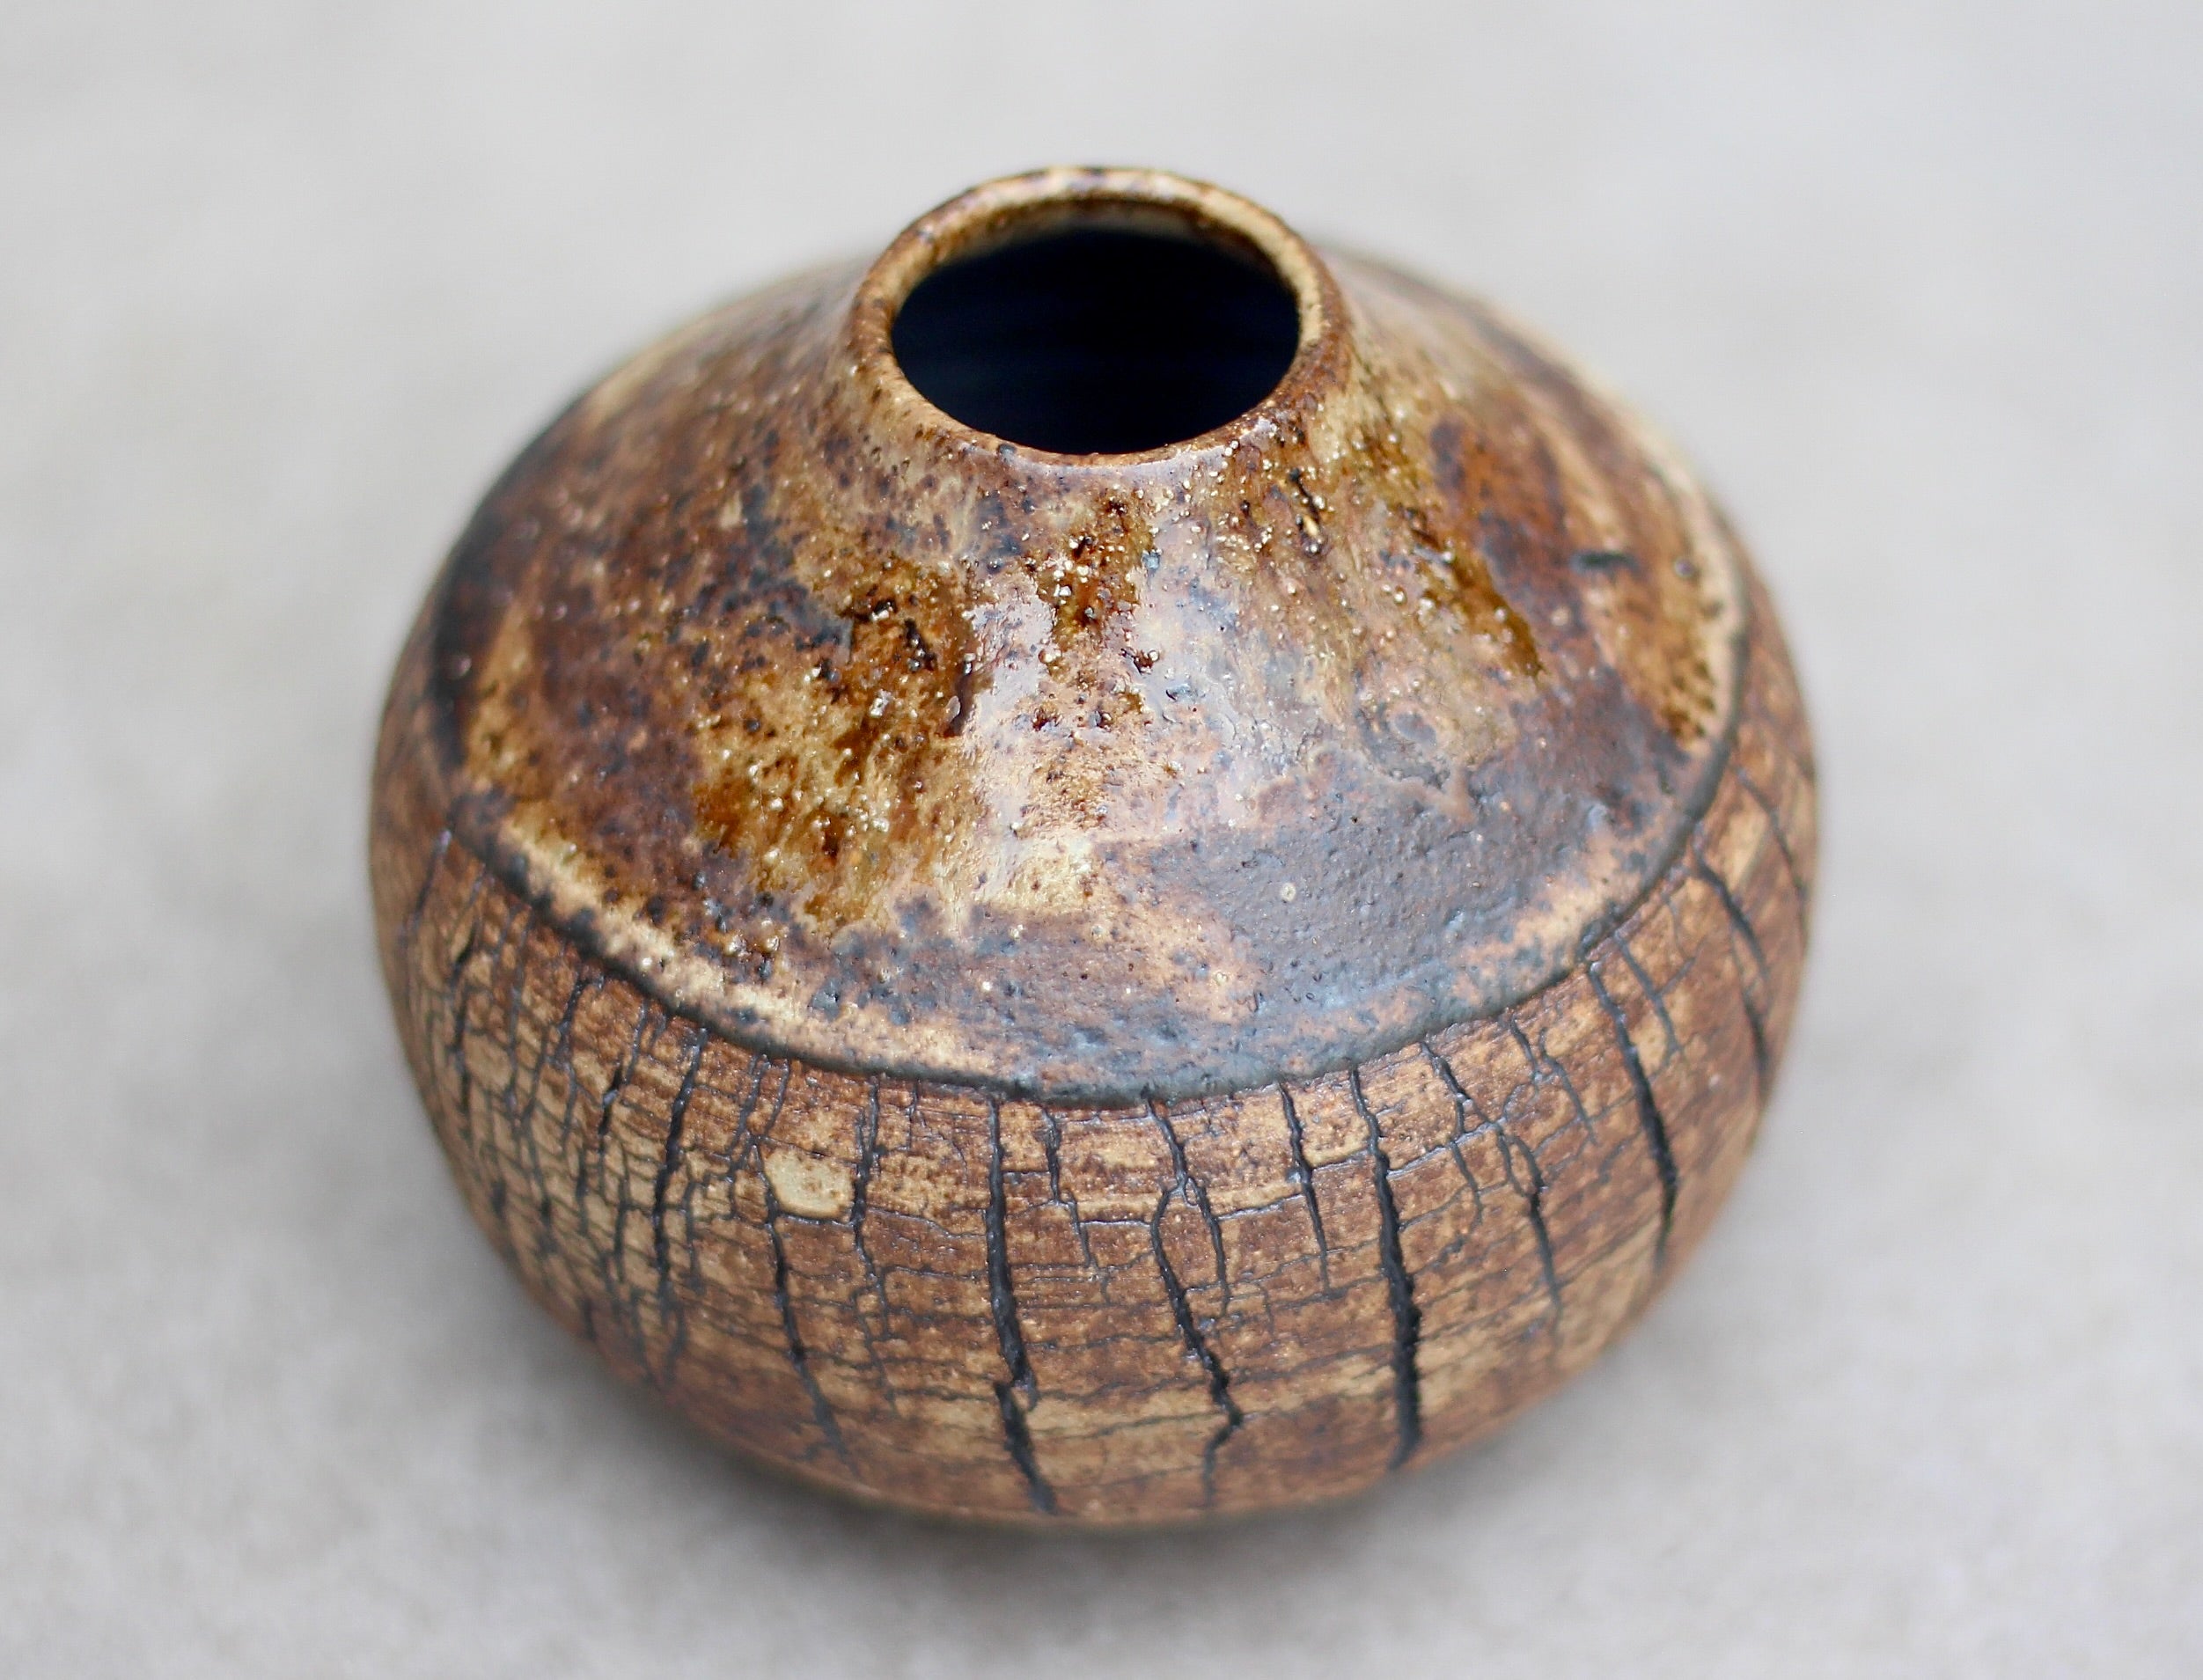 Bark Bud Vase with wood ash